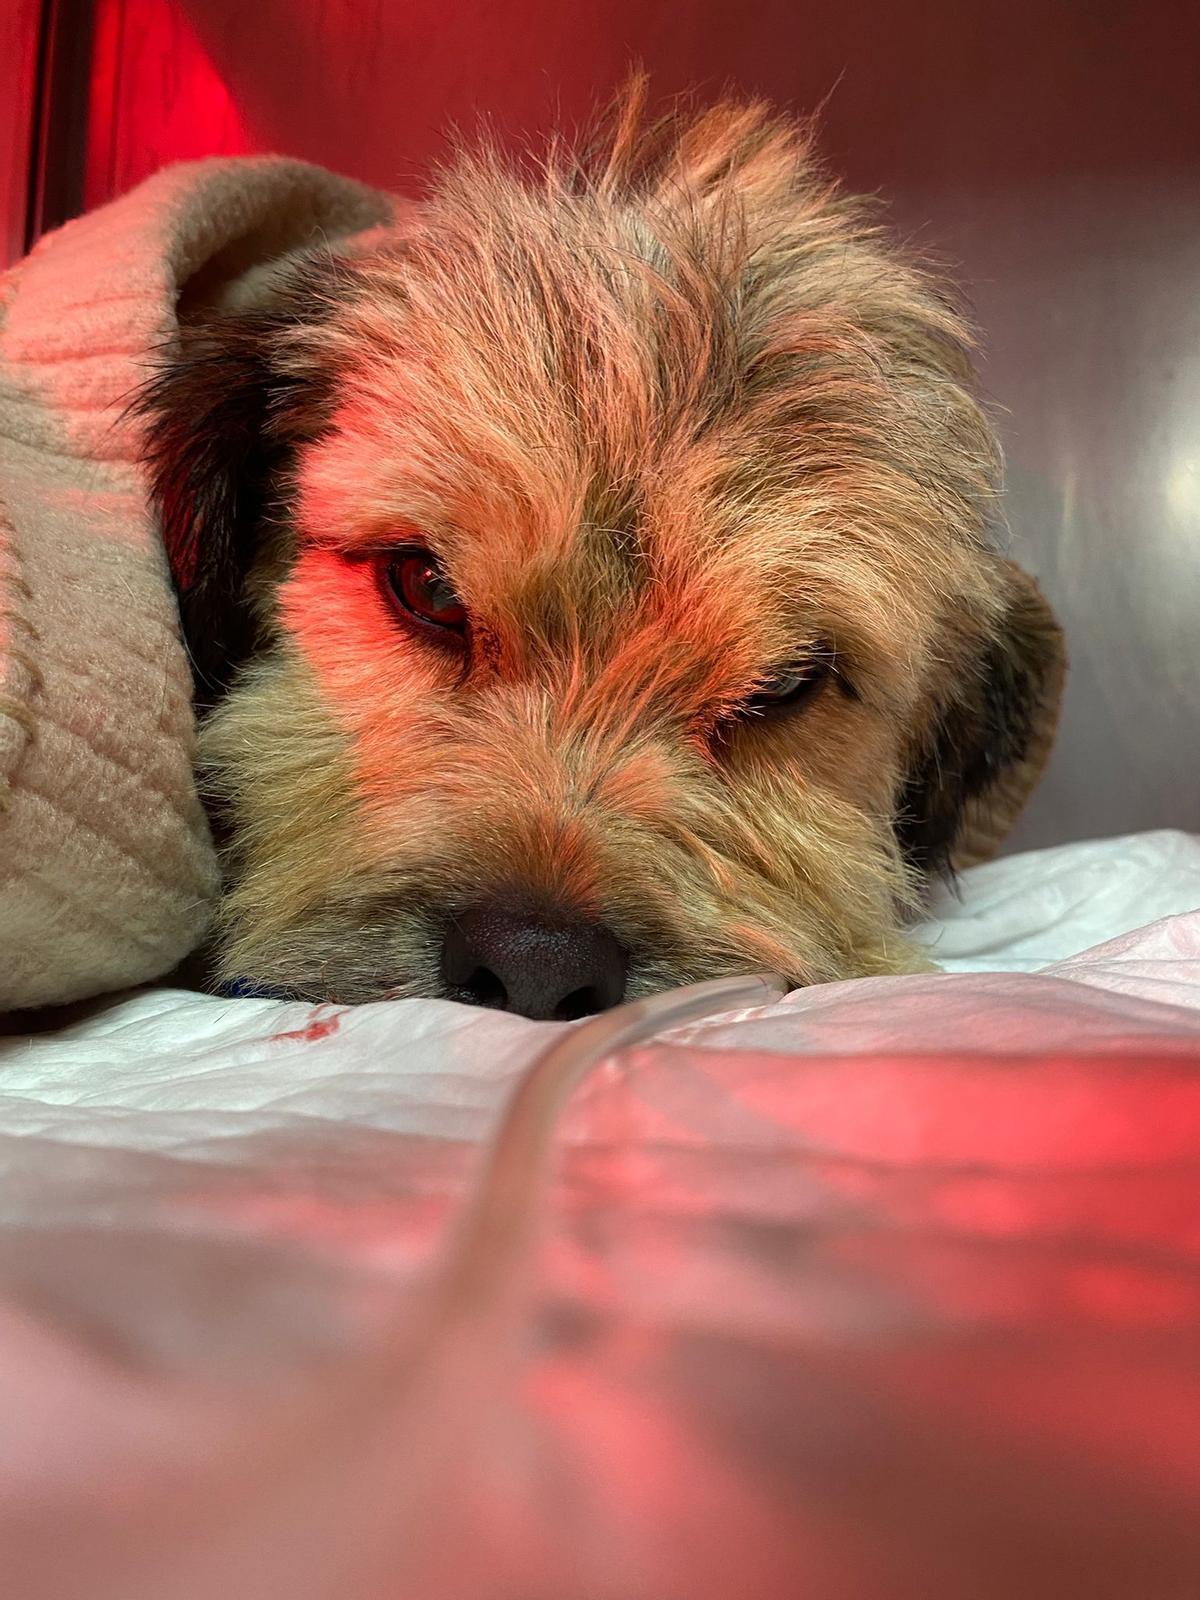 &quot;Vladi&quot;, cuando empezaba a recuperarse en la clñinica veterinaria de su hipotermia severa.